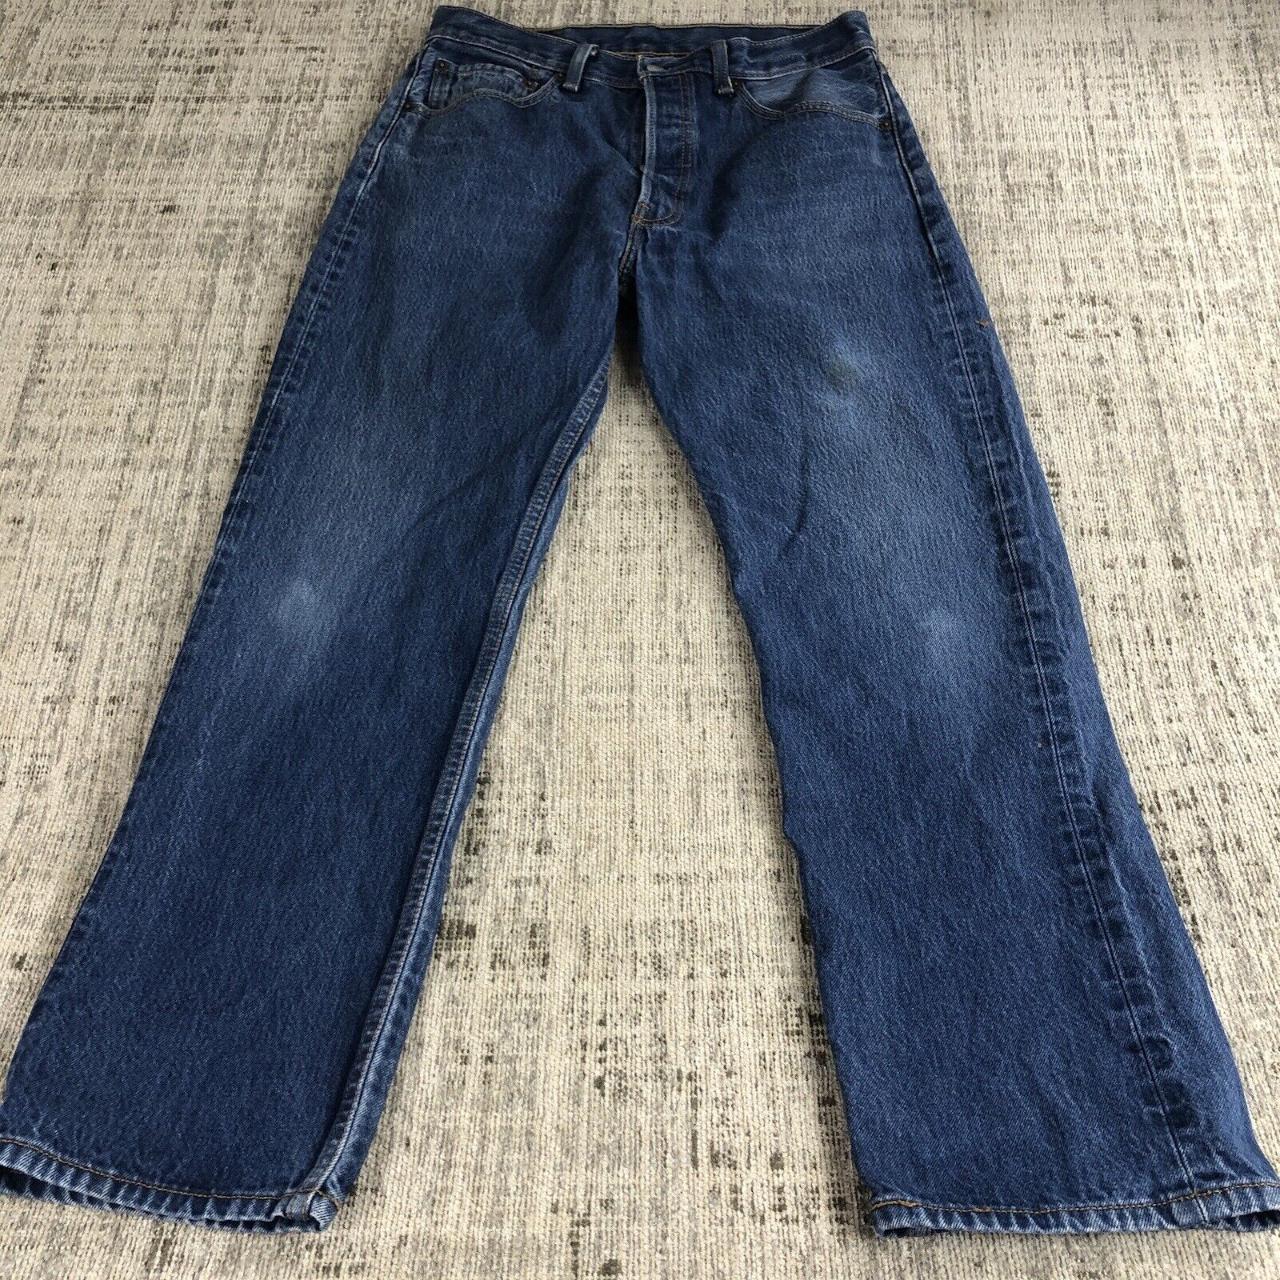 Levi jeans 501 men's blue straight leg button up... - Depop